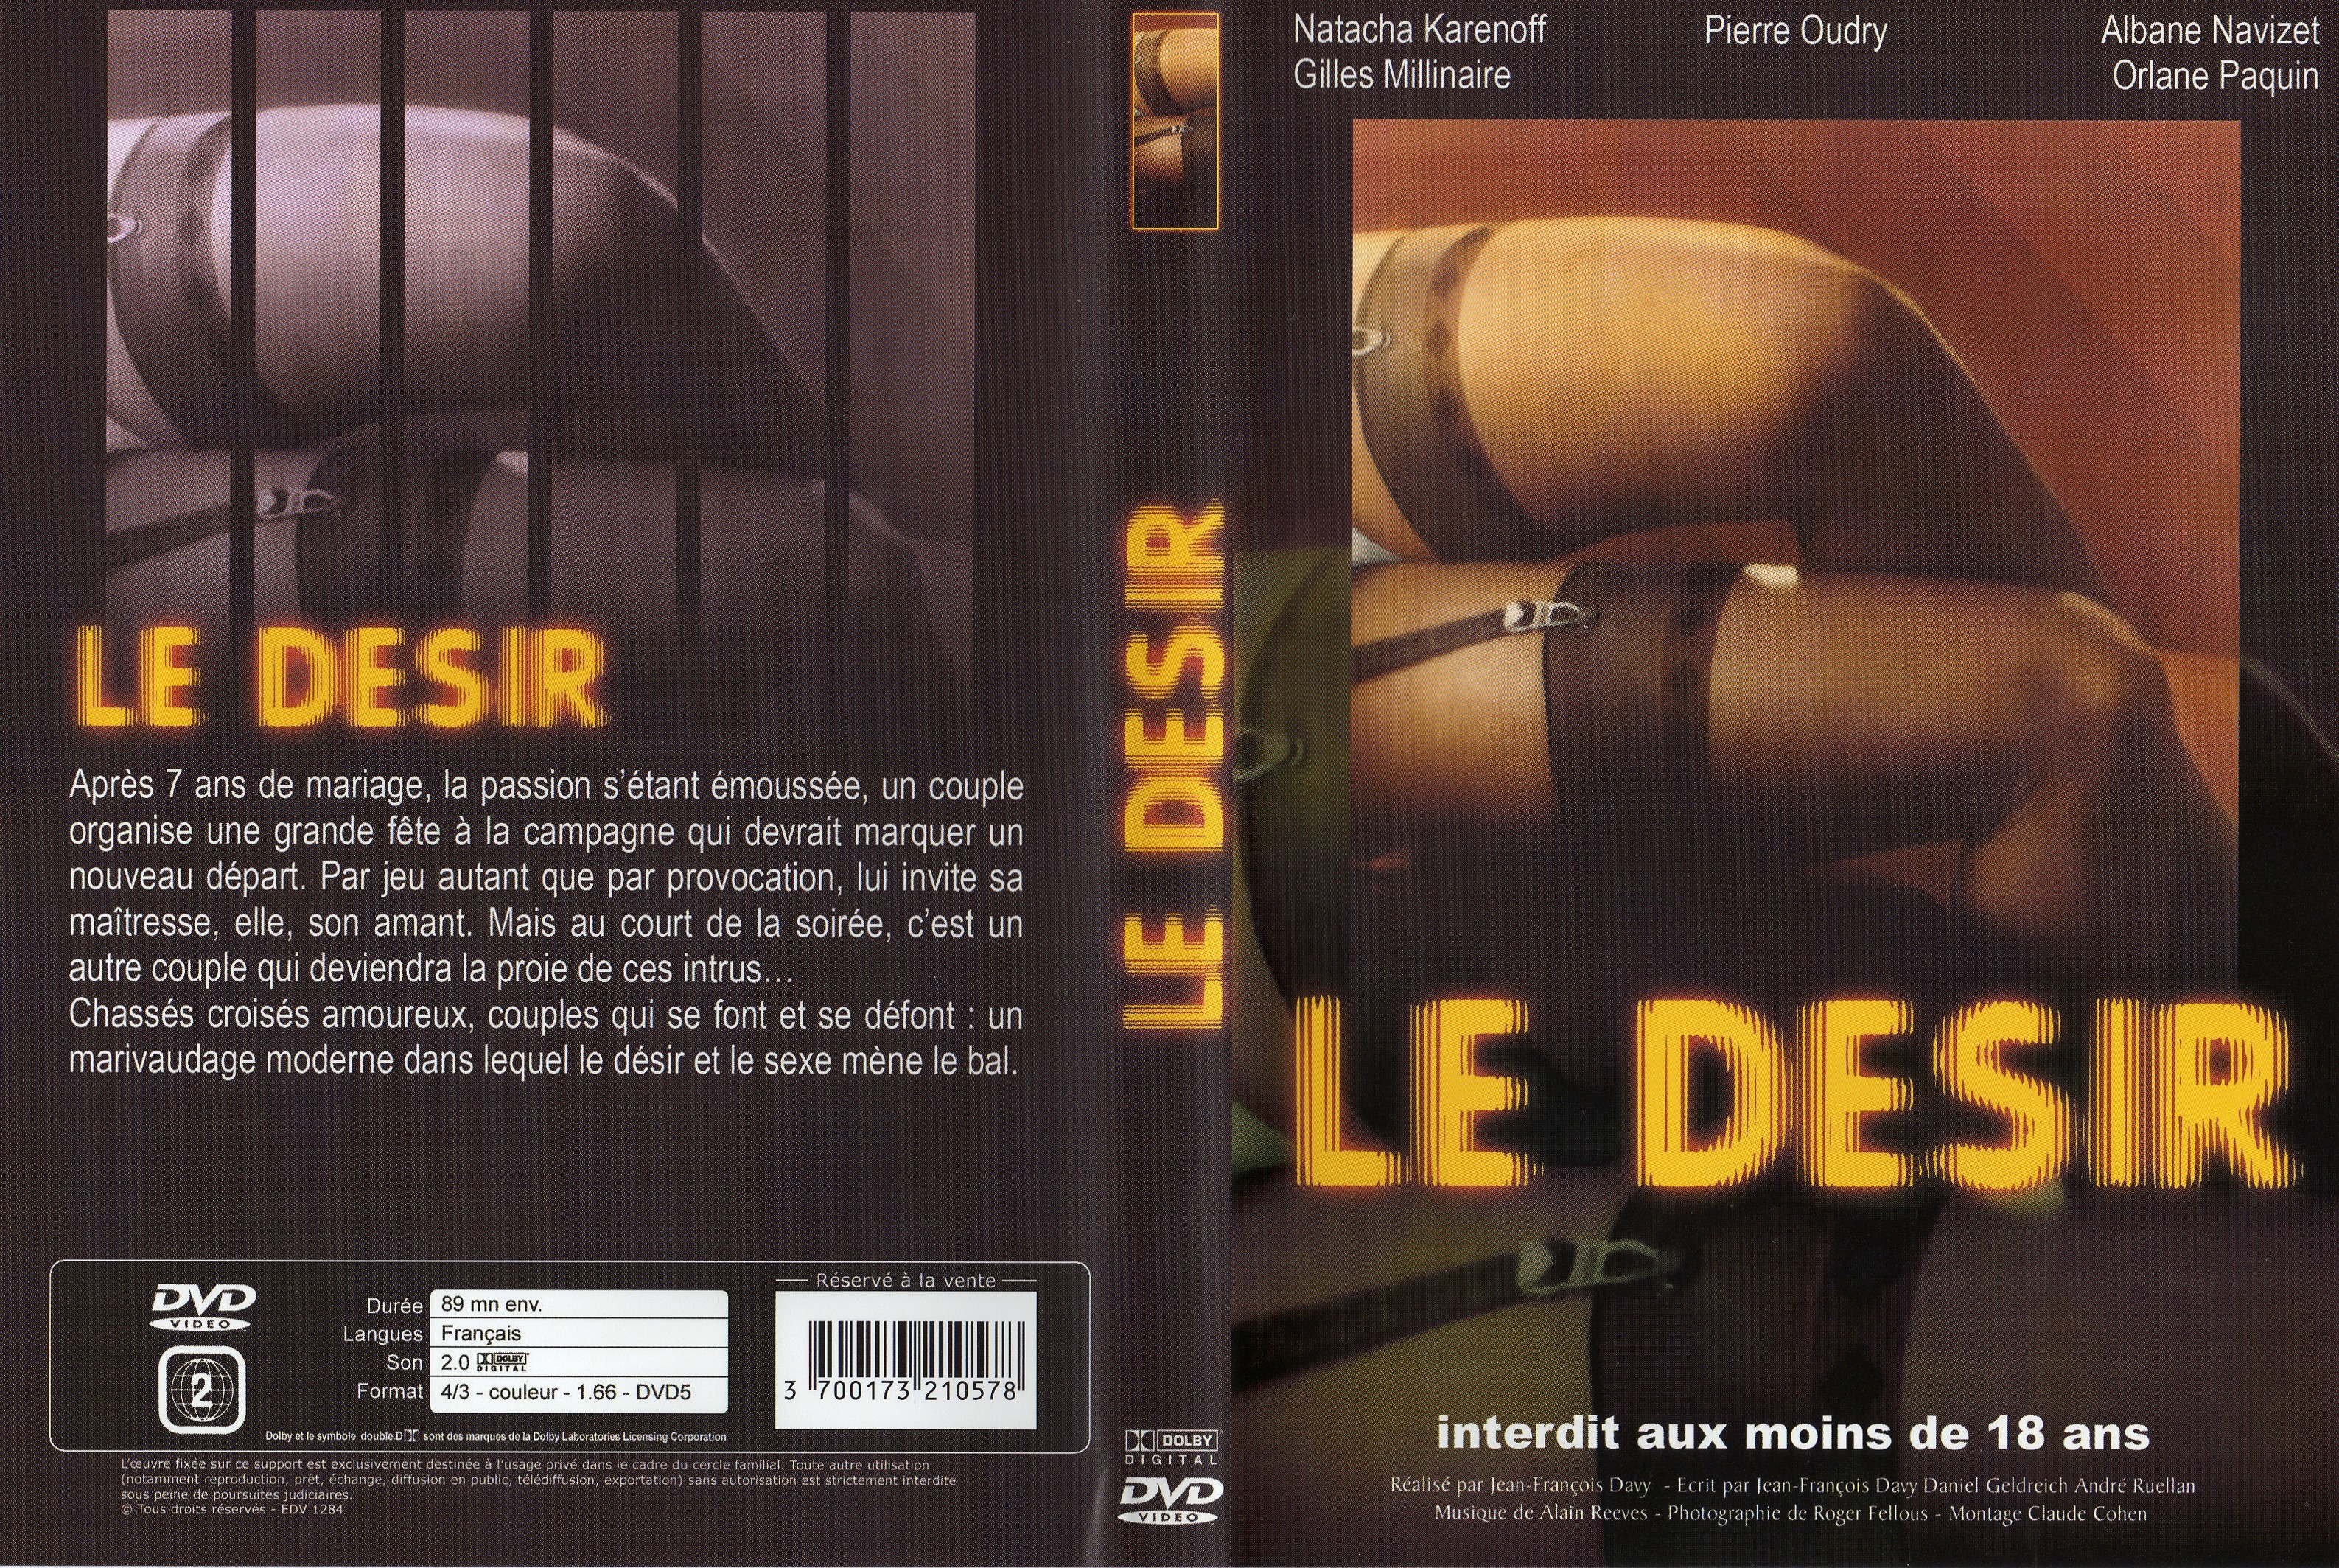 Jaquette DVD Le dsir